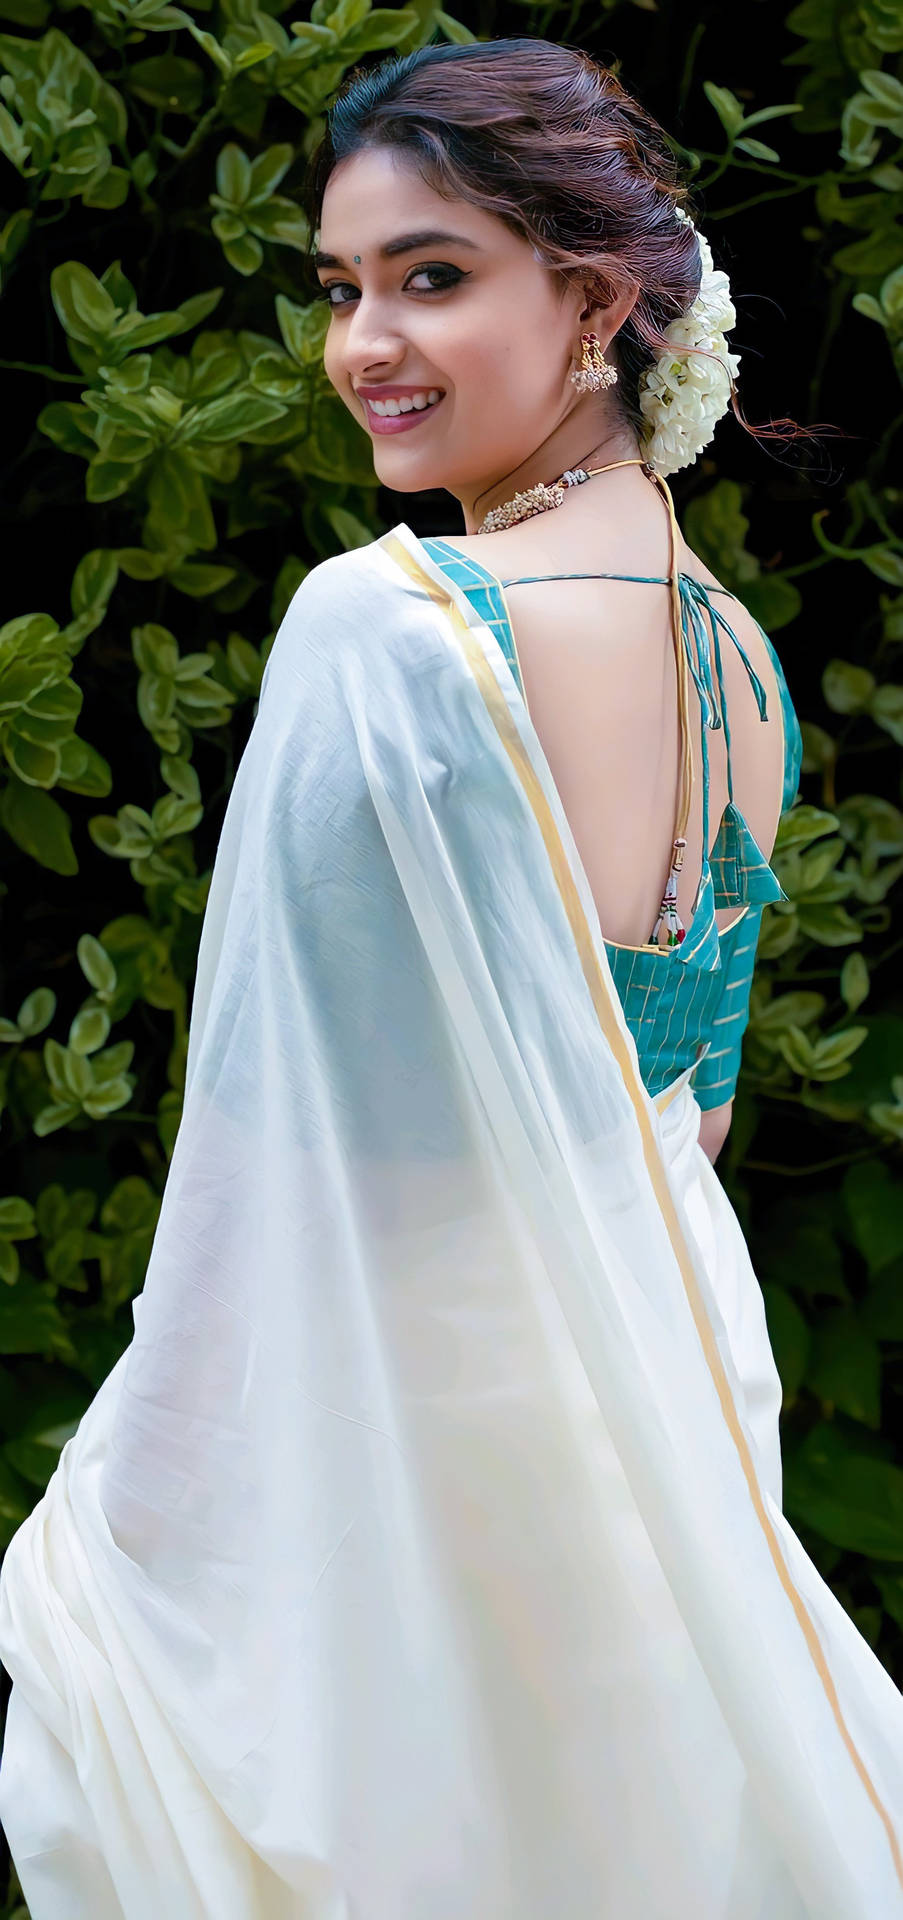 Keerthi Suresh Elegantly Dressed In A White Sari Background